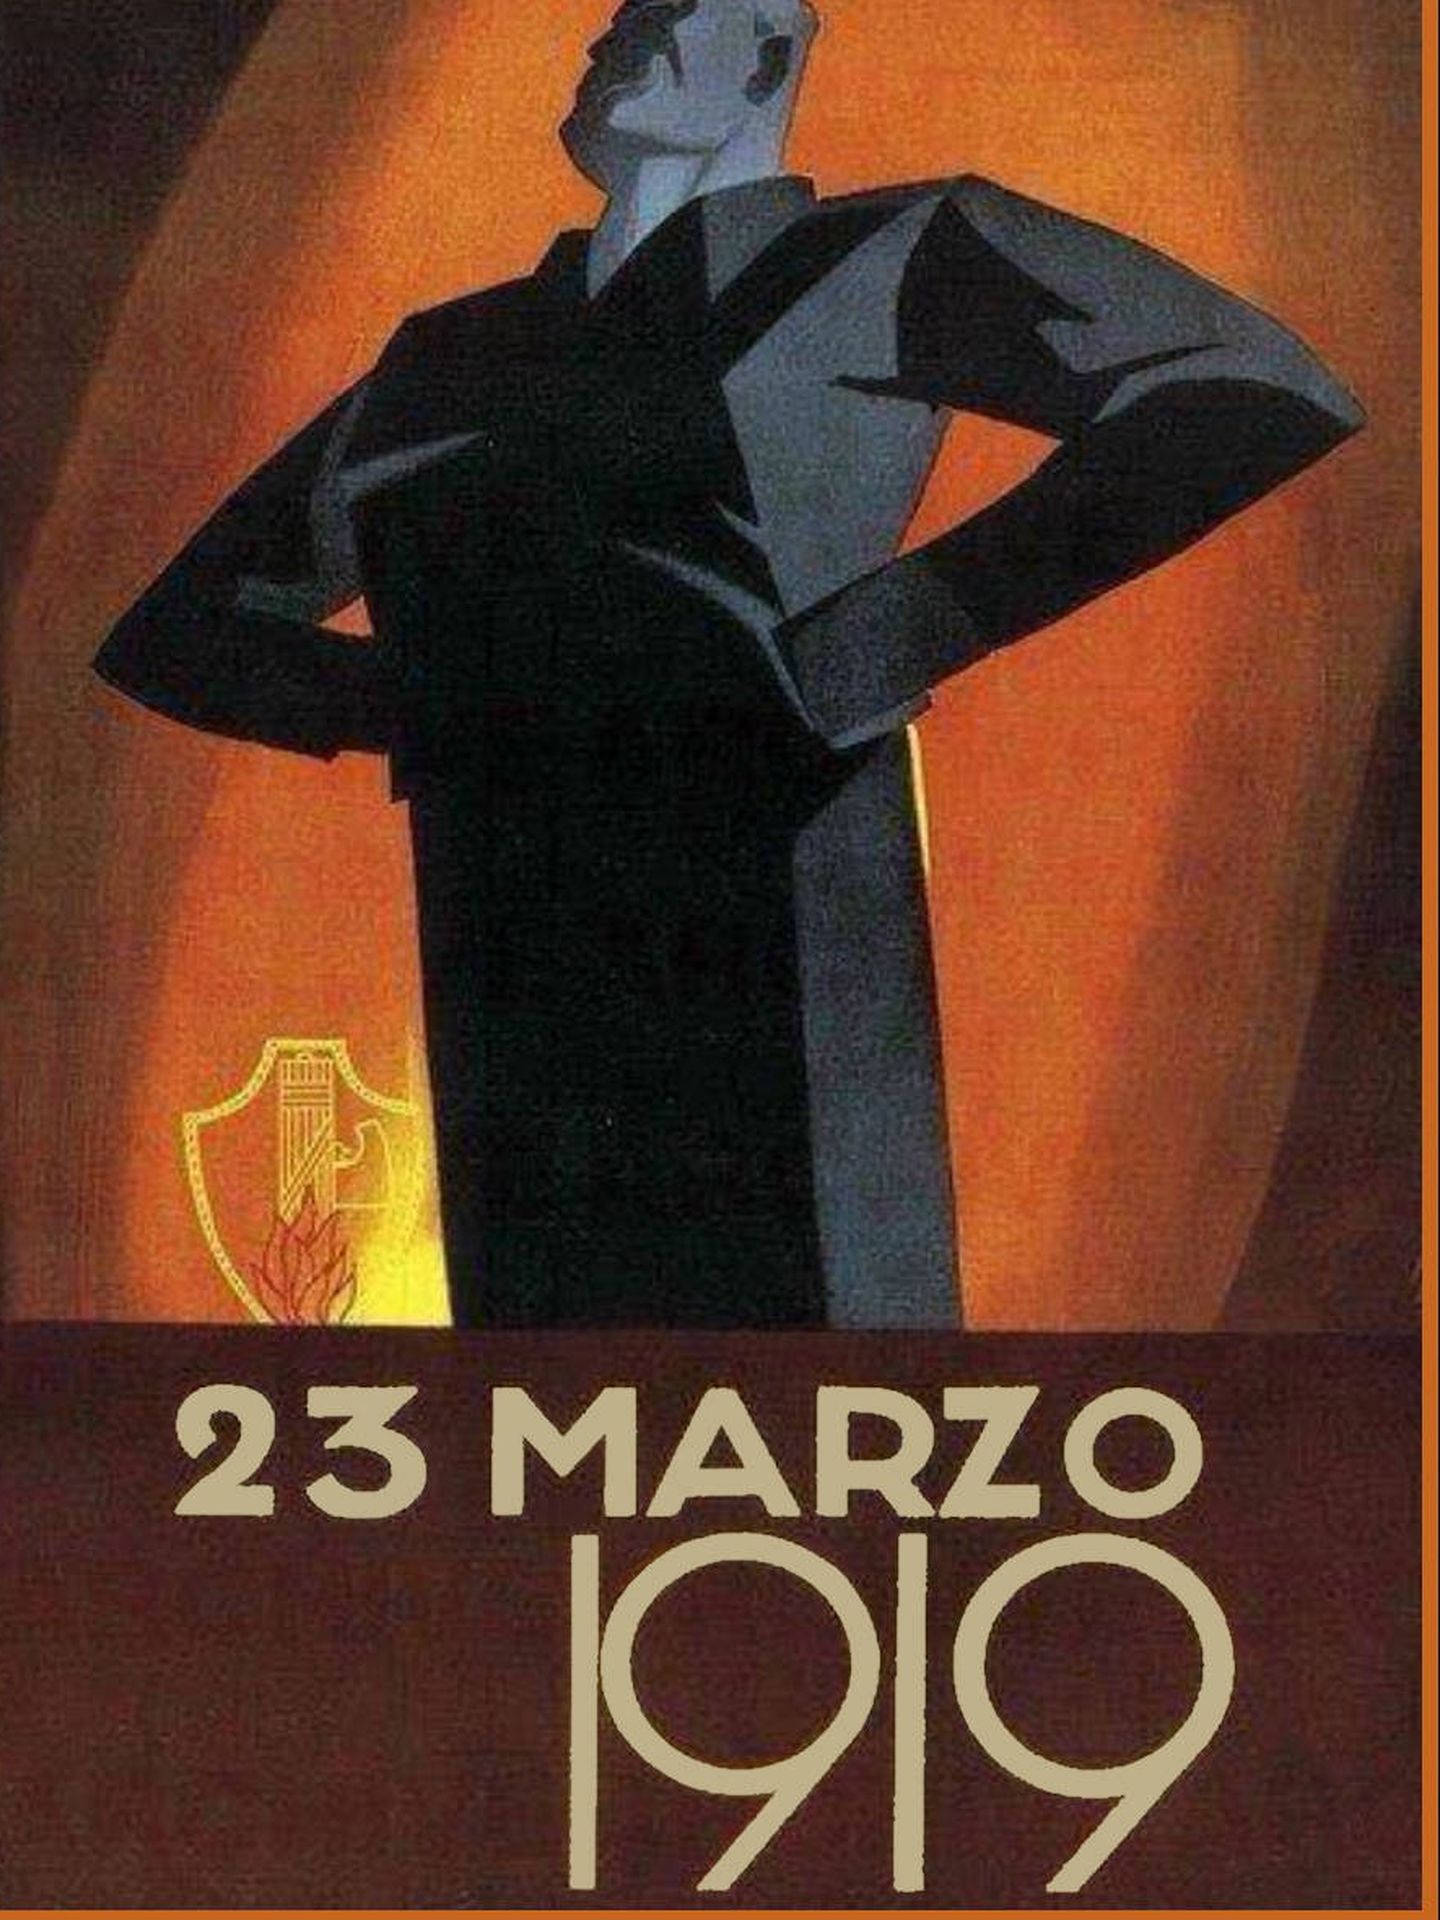 Cartel conmemorativo de la fundación del fascismo en Italia